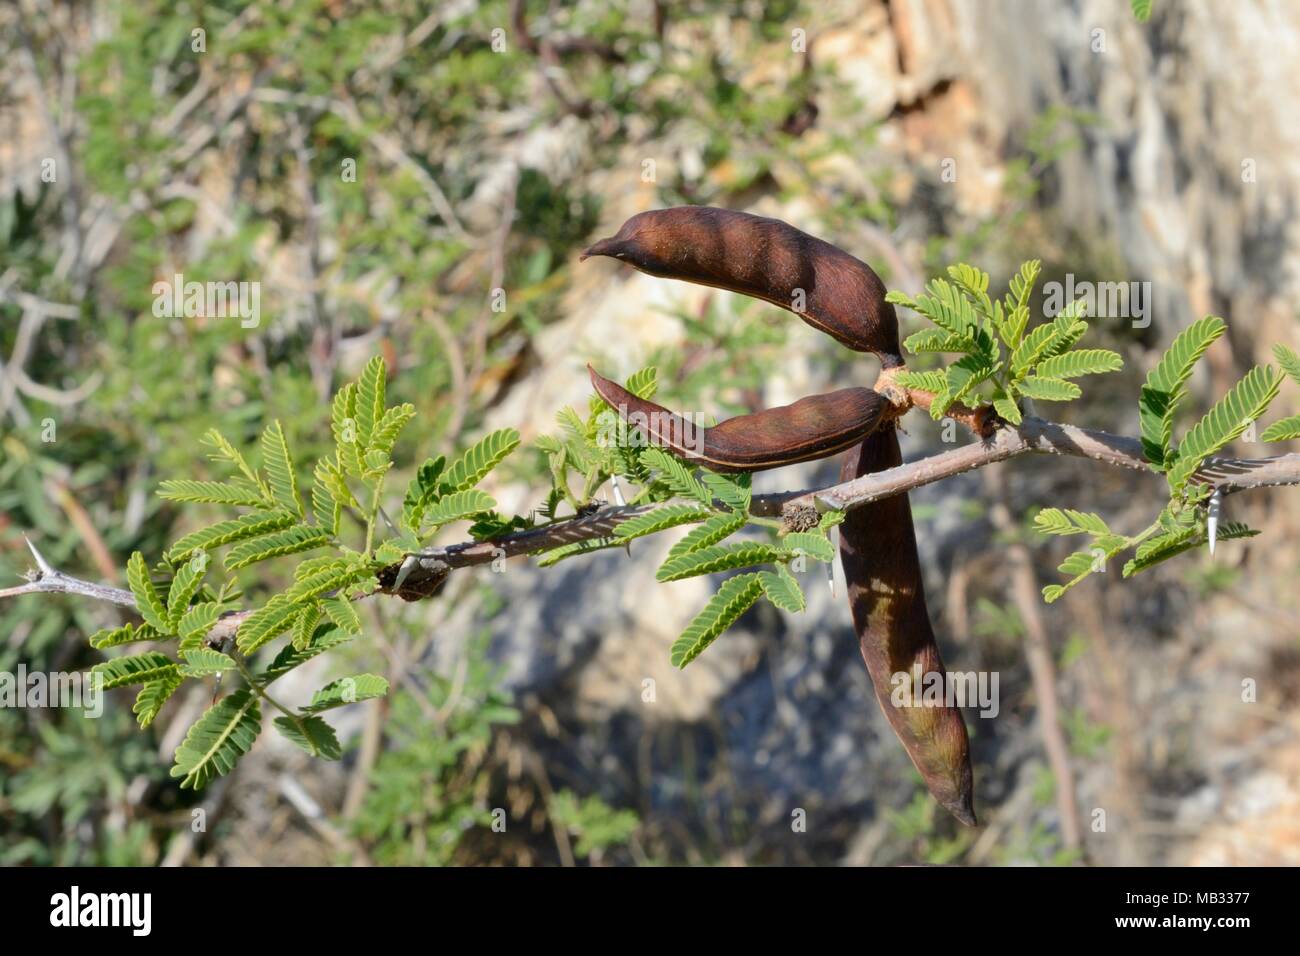 Sweet acacia / Needle bush/ Huisache (Vachellia farnesiana / Acacia farnesiana) seed pods, Greece, July. Stock Photo